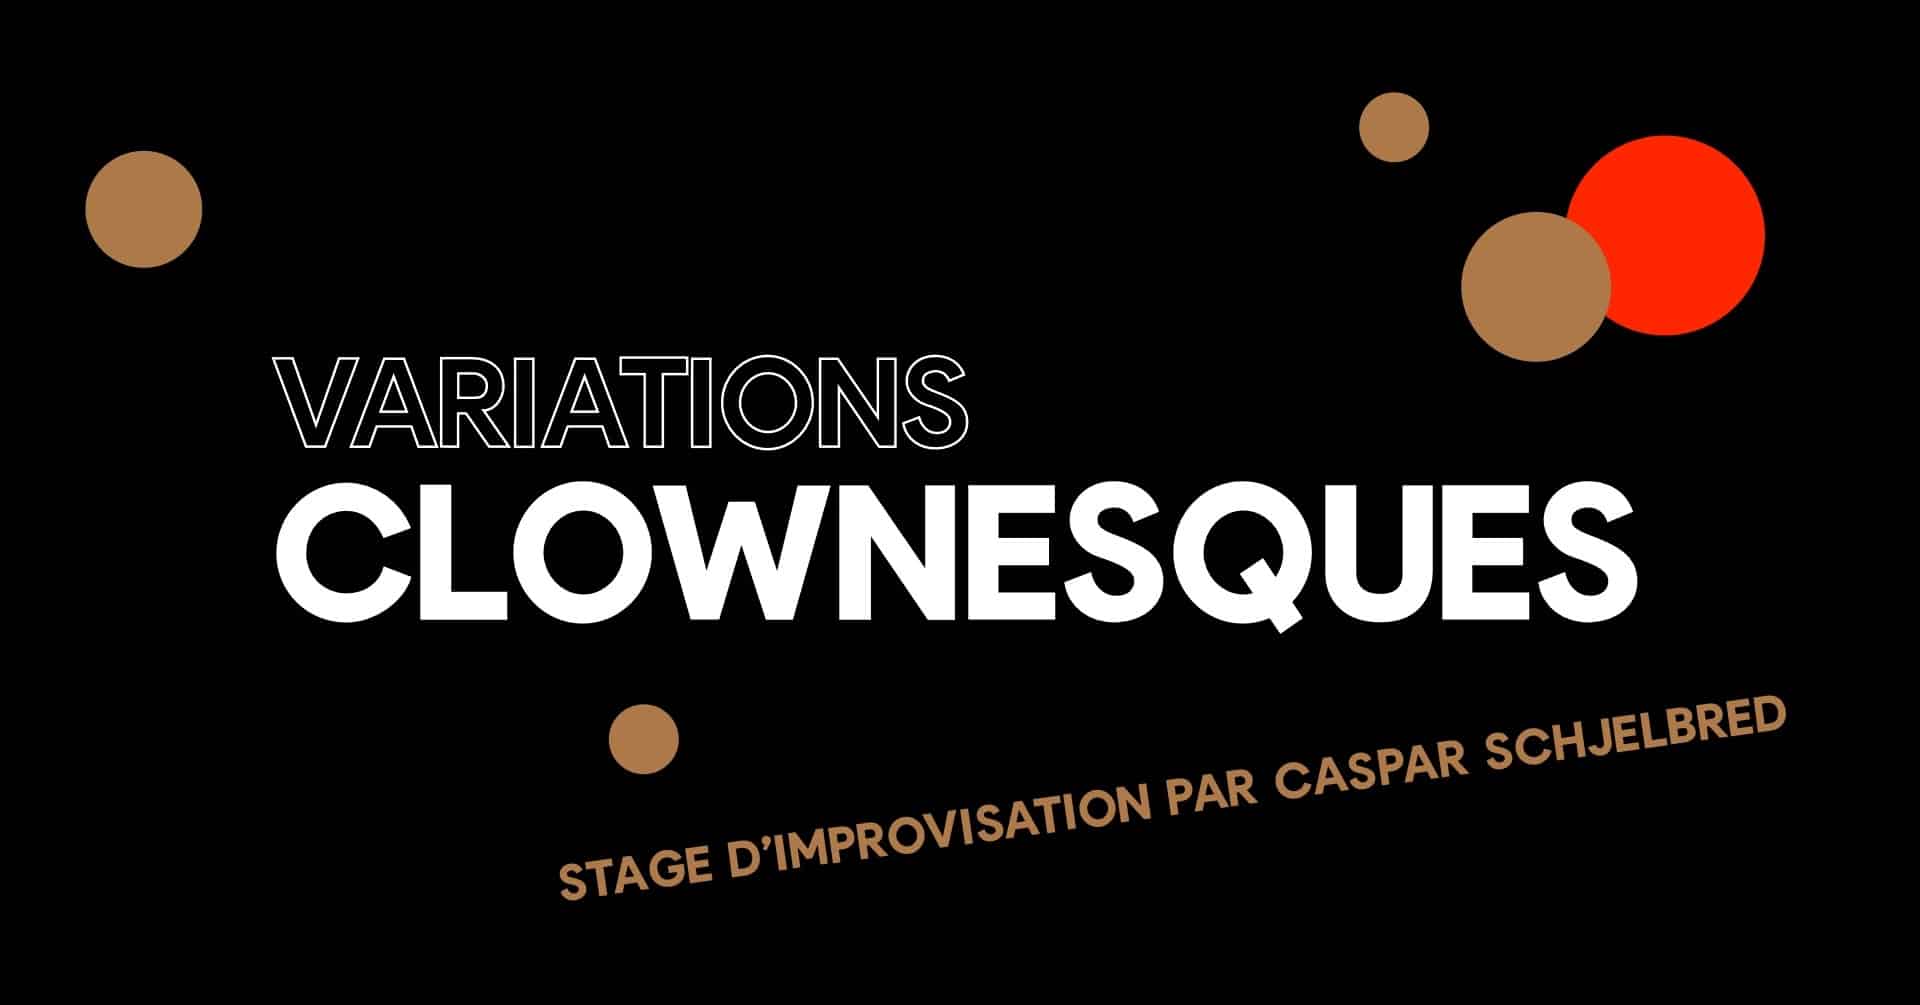 Variations clownesques – Stage d'improvisation par Caspar Schjelbred